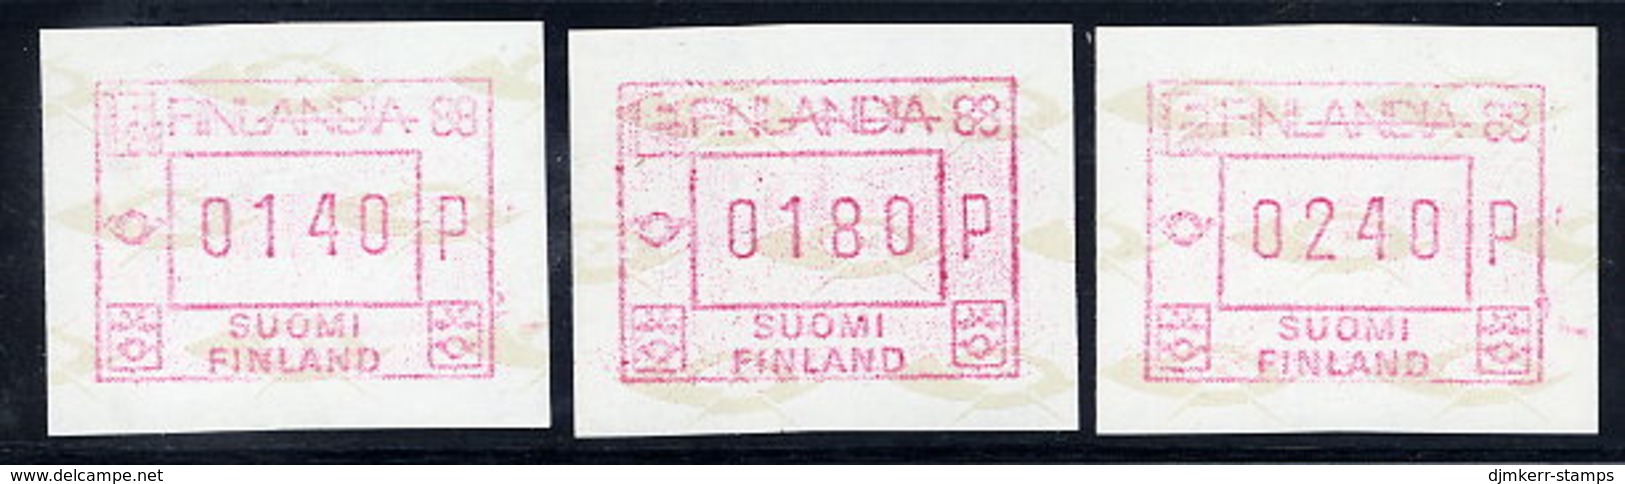 FINLAND 1988 FINLANDIA '88  Issue 3 Different Values MNH / ** .  Michel 4 - Automatenmarken [ATM]